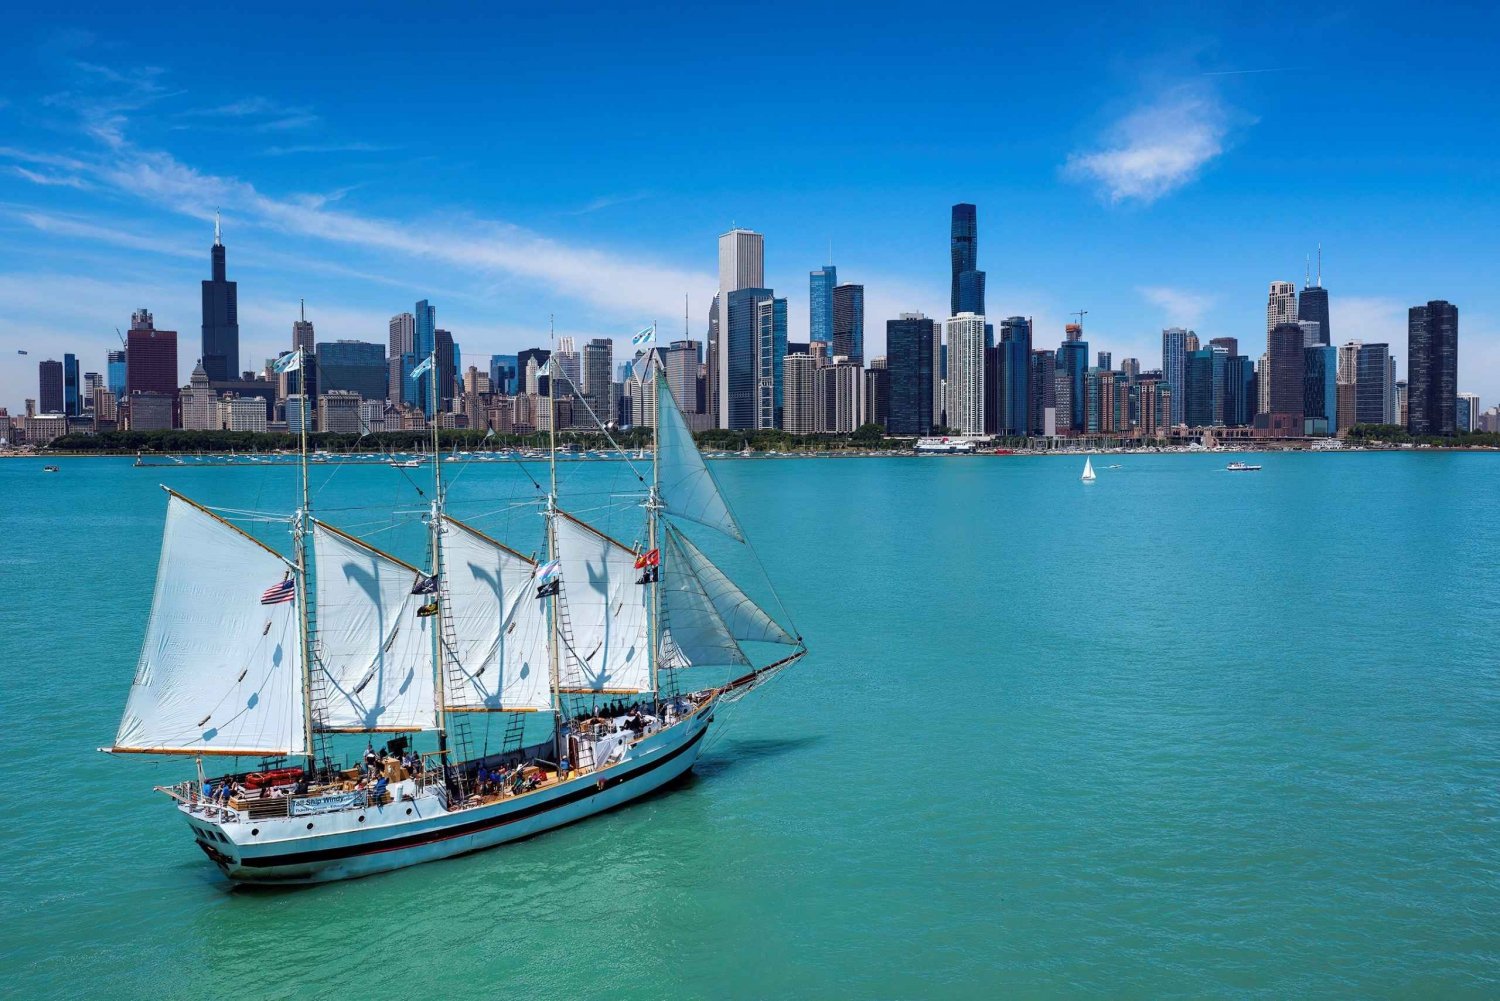 Chicago: crociera educativa 'Tall Ship Windy' sul lago Michigan